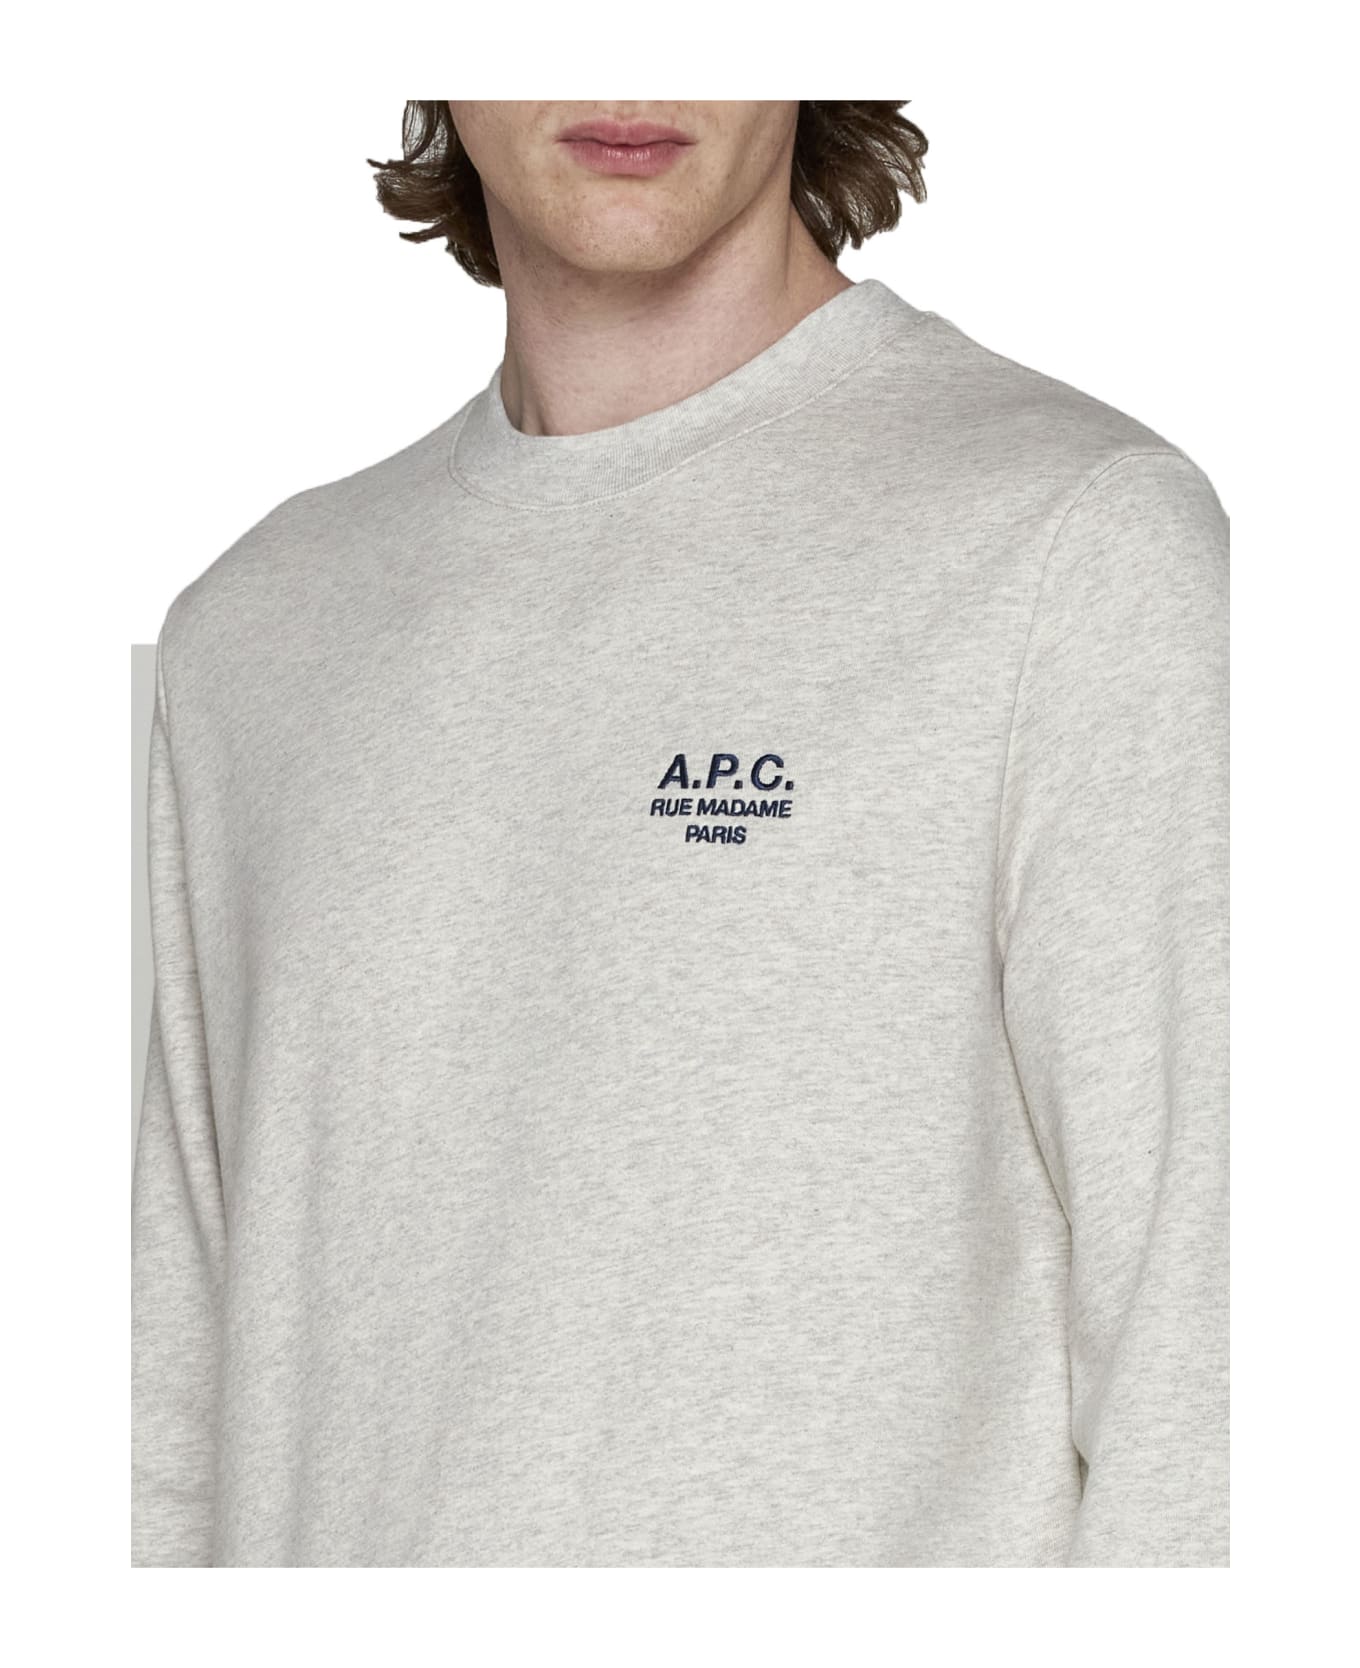 A.P.C. Rider Sweatshirt - Grey フリース